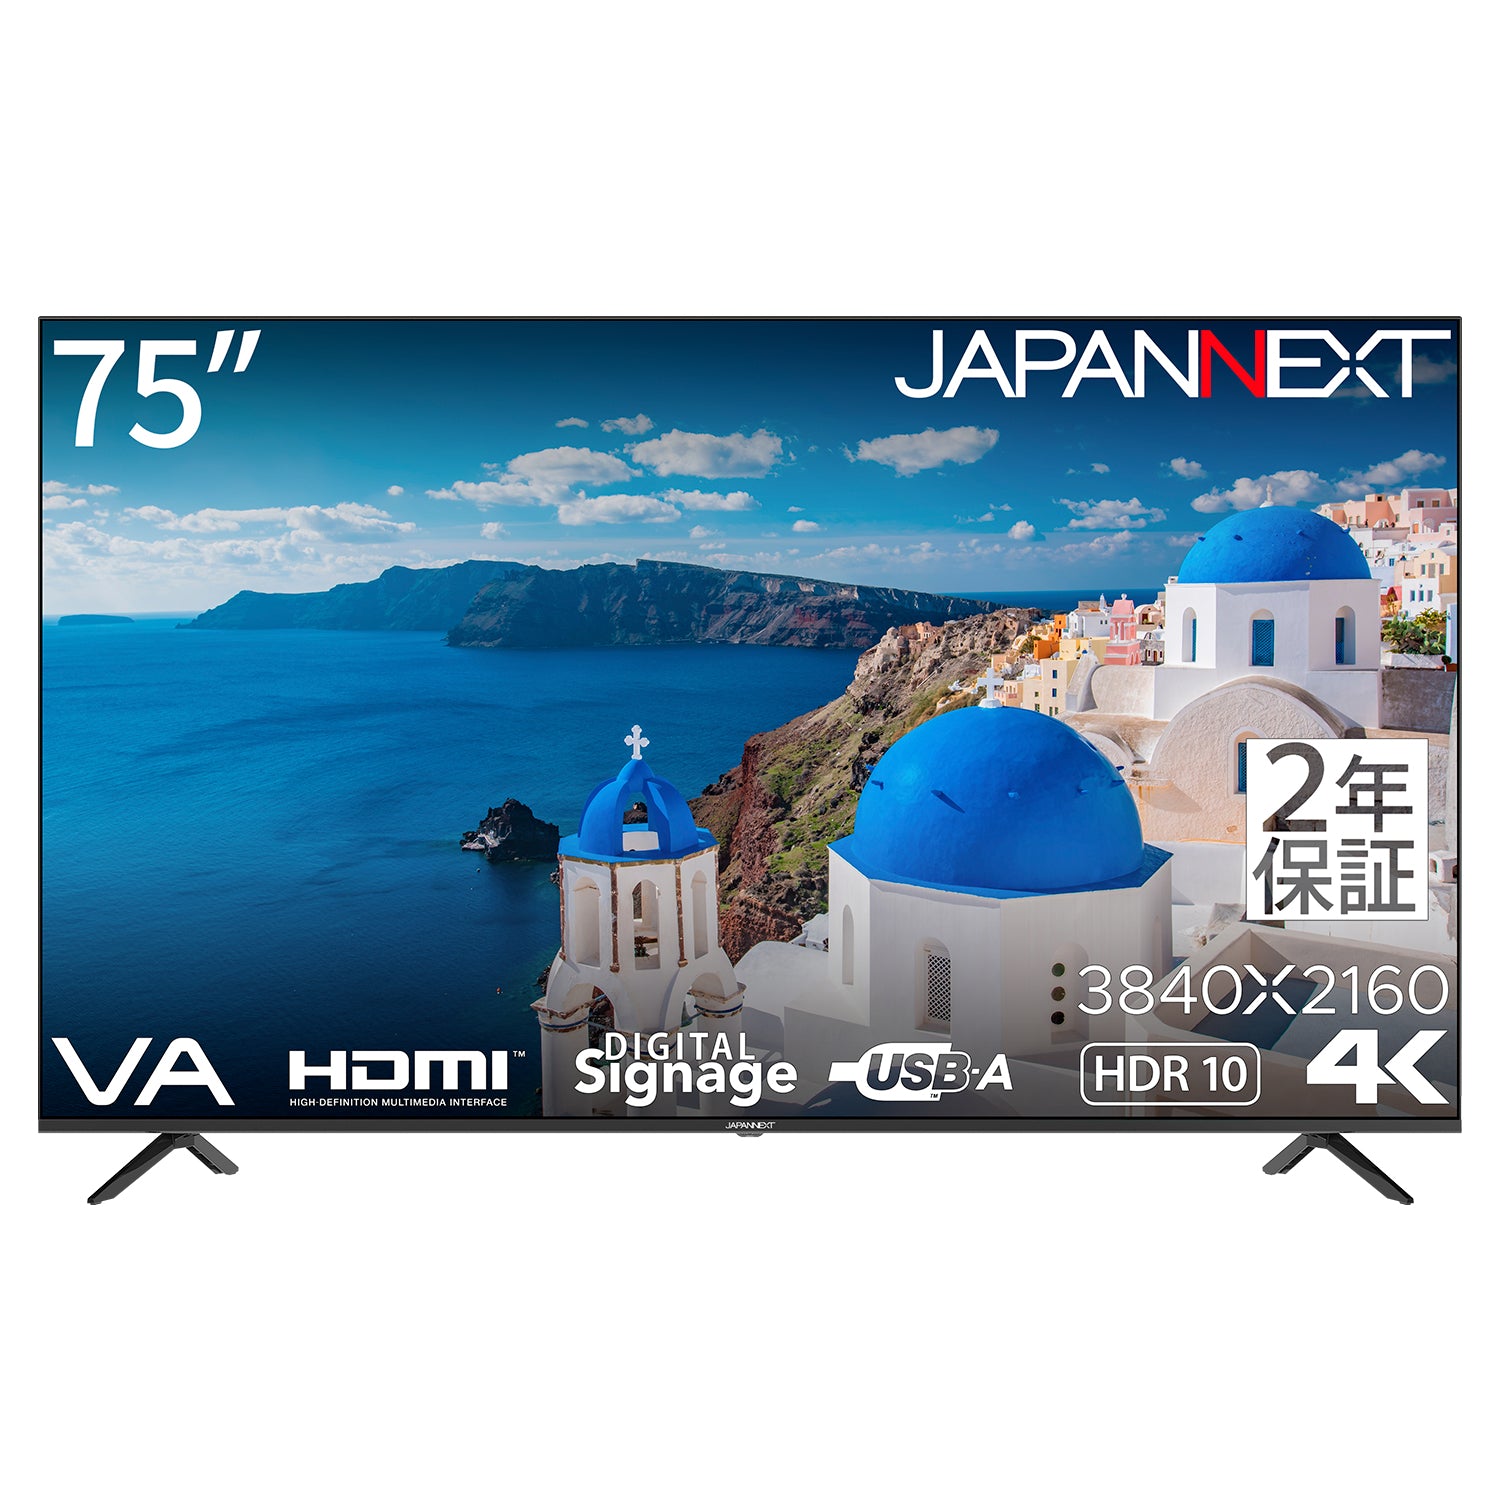 2年保証モデル】JAPANNEXT 75インチ VAパネル搭載 4K(3840x2160)解像度 大型液晶モニター JN-V750UHDR-U-H2  HDMI HDR ビデオ/音声入力端子 オプティカル出力端子 コンポーネント入力 USB再生対応 サイネージ